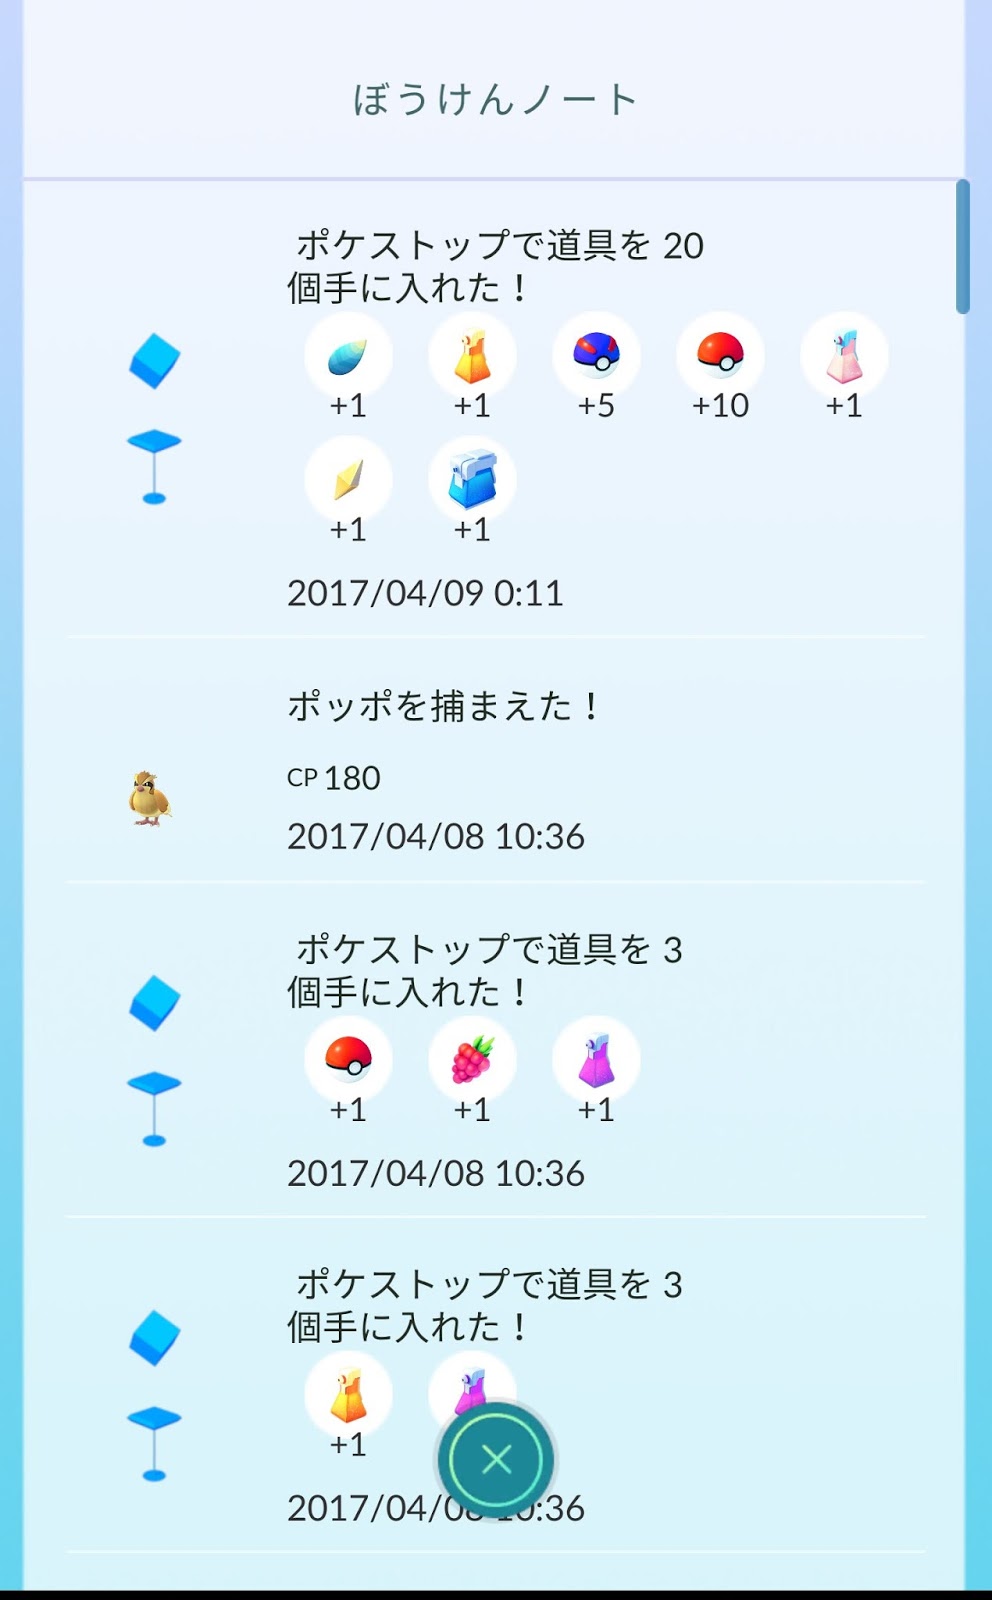 ポケモンgo日記 Pokemon Go Diary In Japan シードラ に りゅうのうろこ を使って キングドラ に進化させてみた